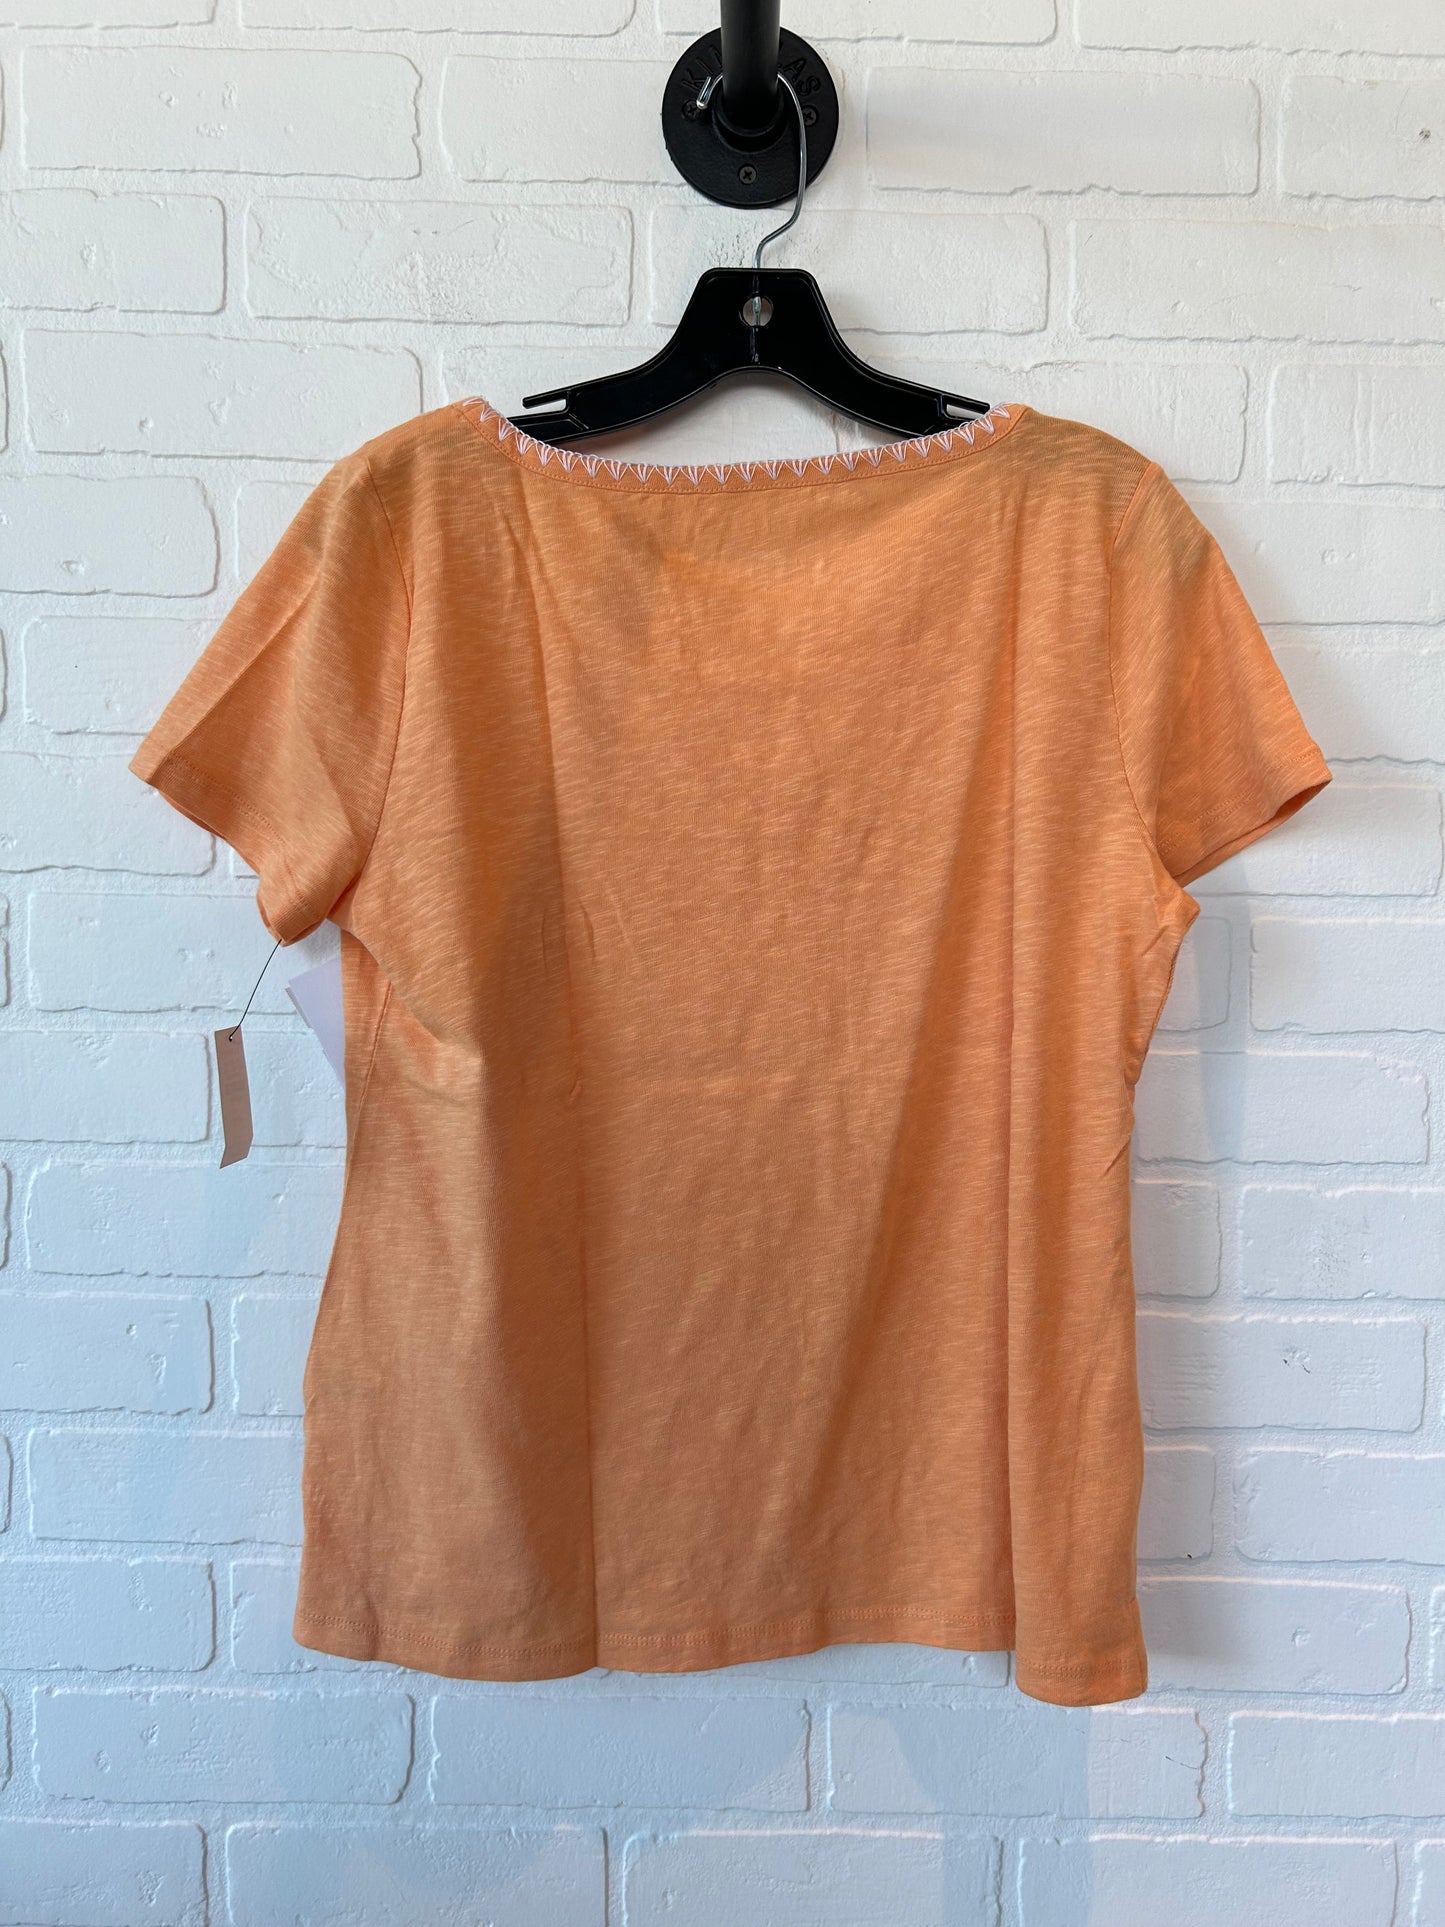 Orange & White Top Short Sleeve Basic Talbots, Size M